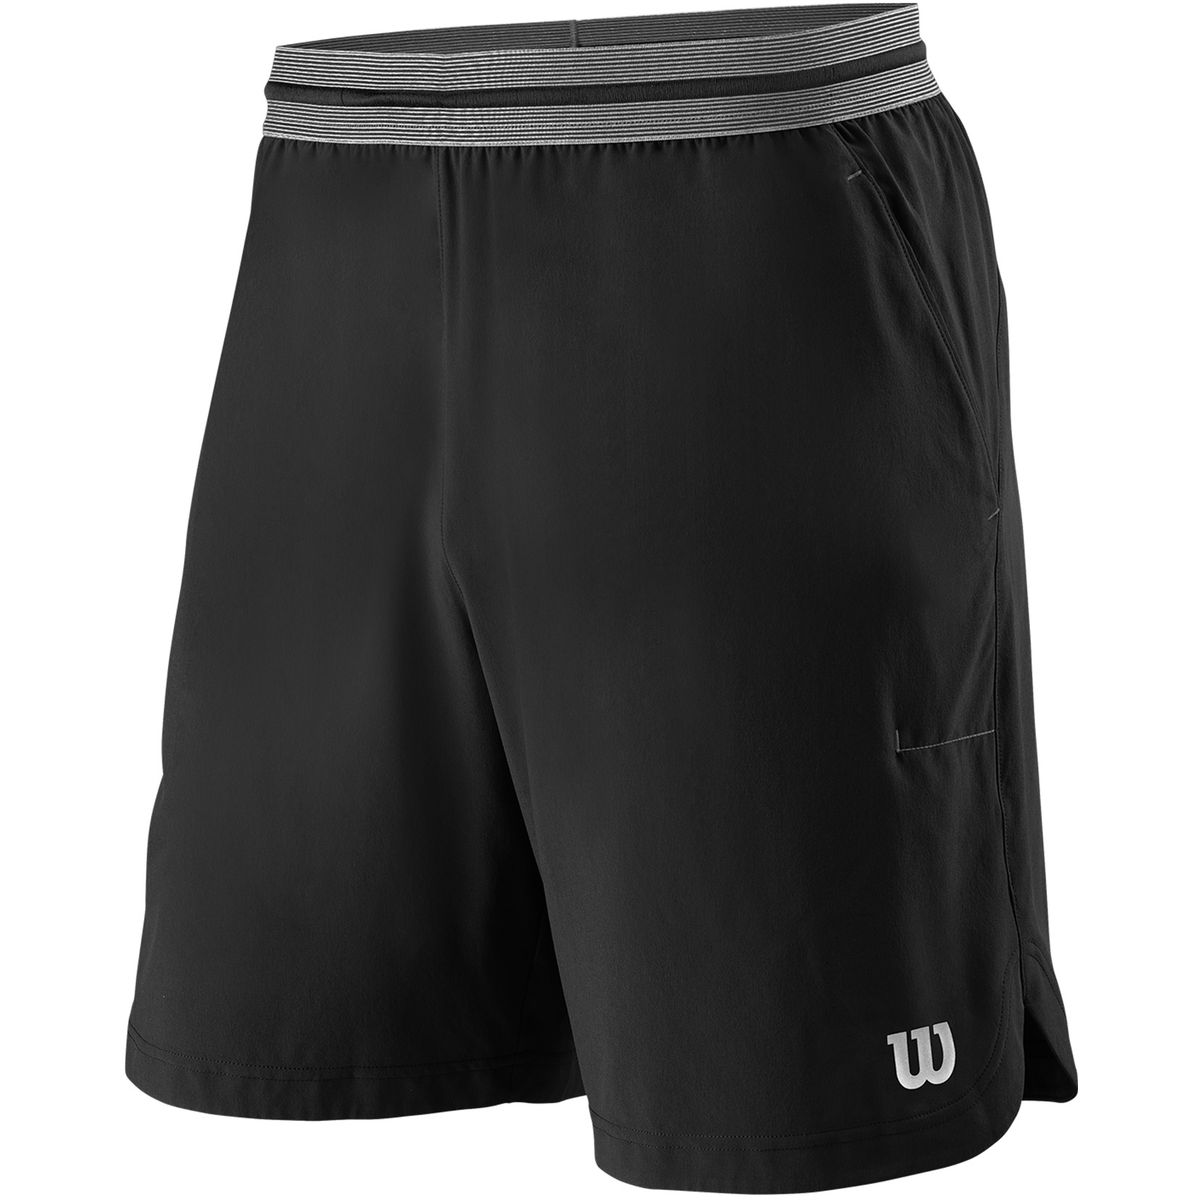 Wilson Power 8 II Herren Shorts